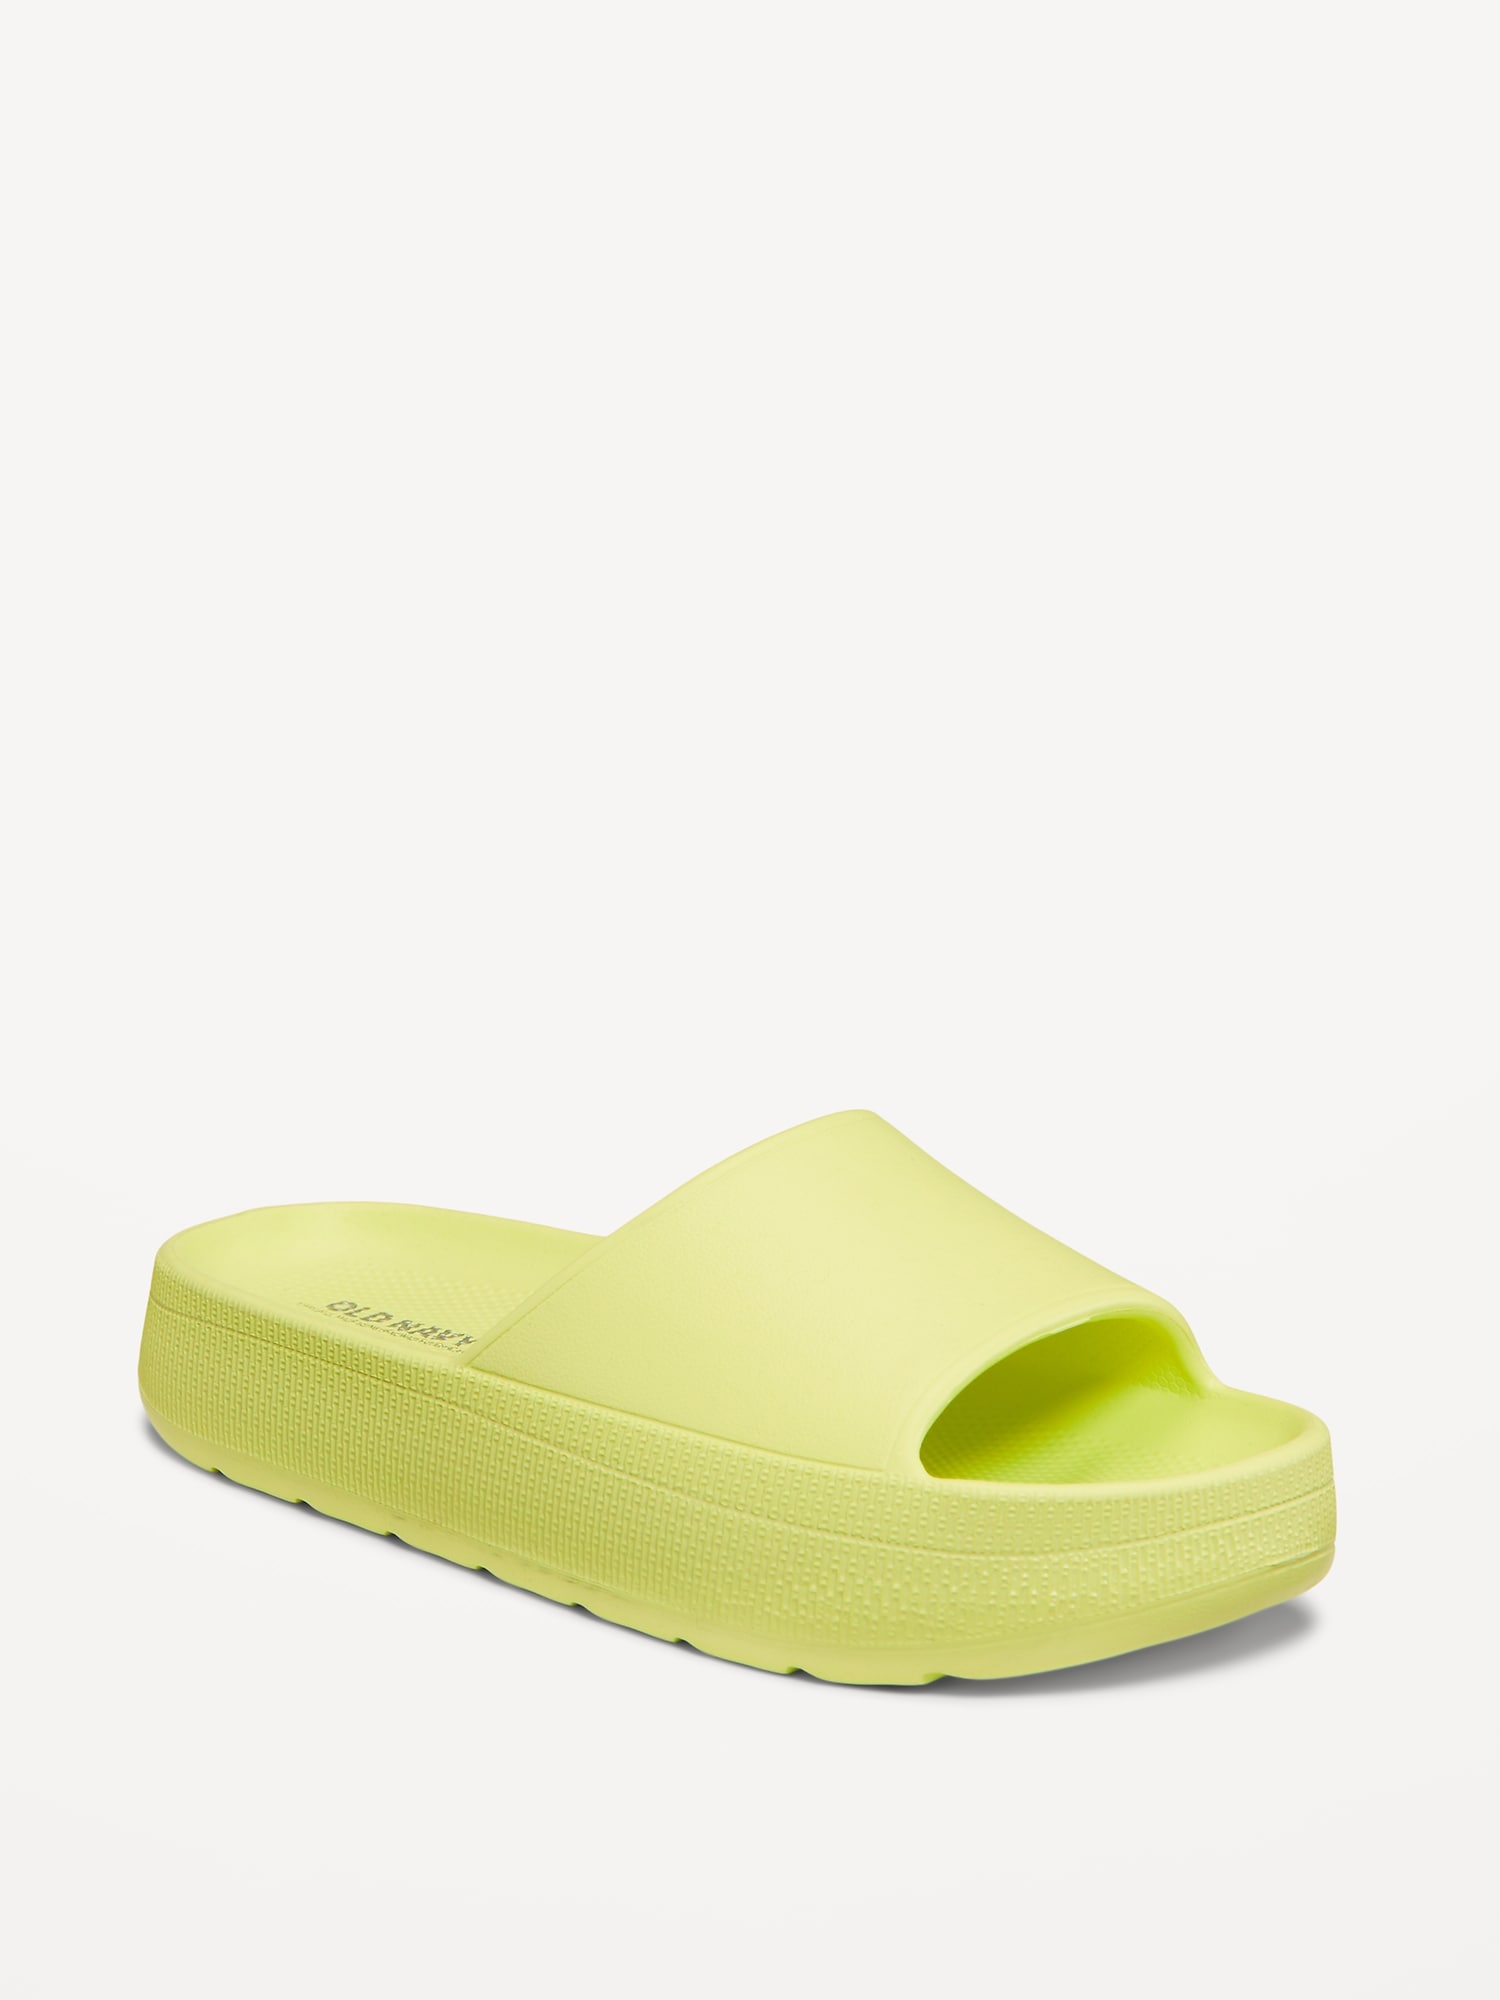 Flatform Slide Sandals for Girls (Partially Plant-Based)